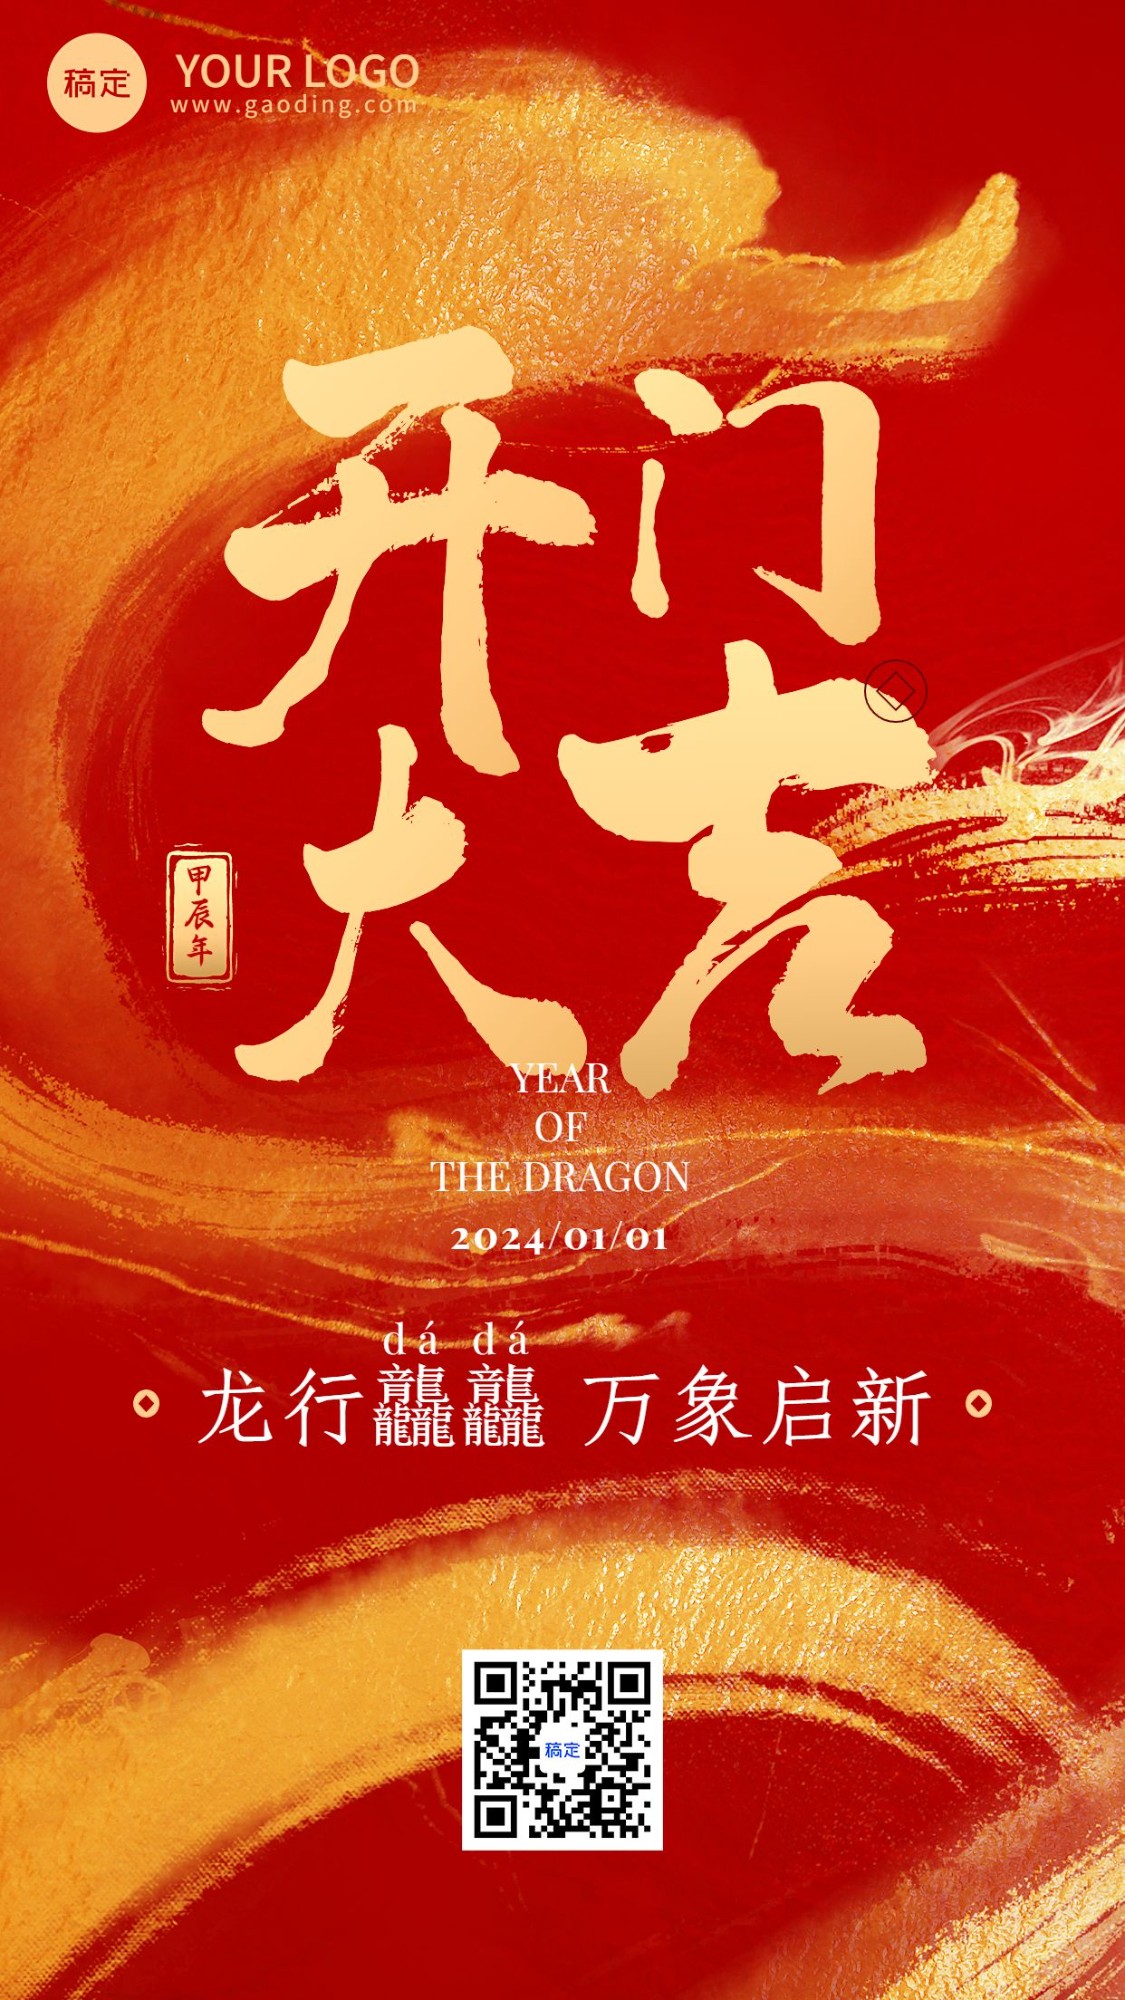 金融保险春节龙年龙行龘龘开门红大吉大字氛围营造祝福宣传水墨风手机海报